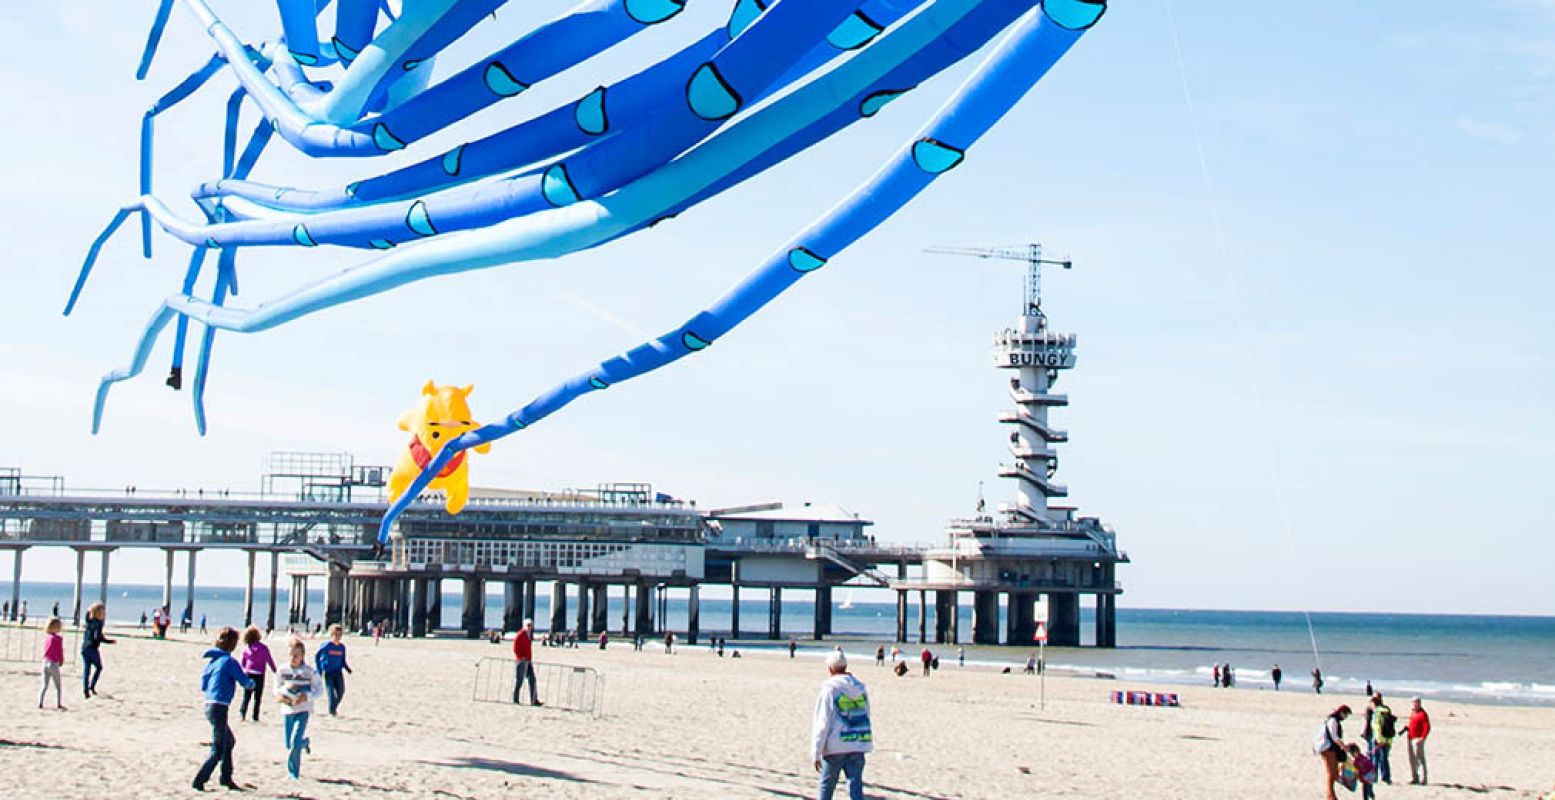 De pier van Scheveningen is het decor voor de vliegershows. Foto: Vliegerfestival Scheveningen.